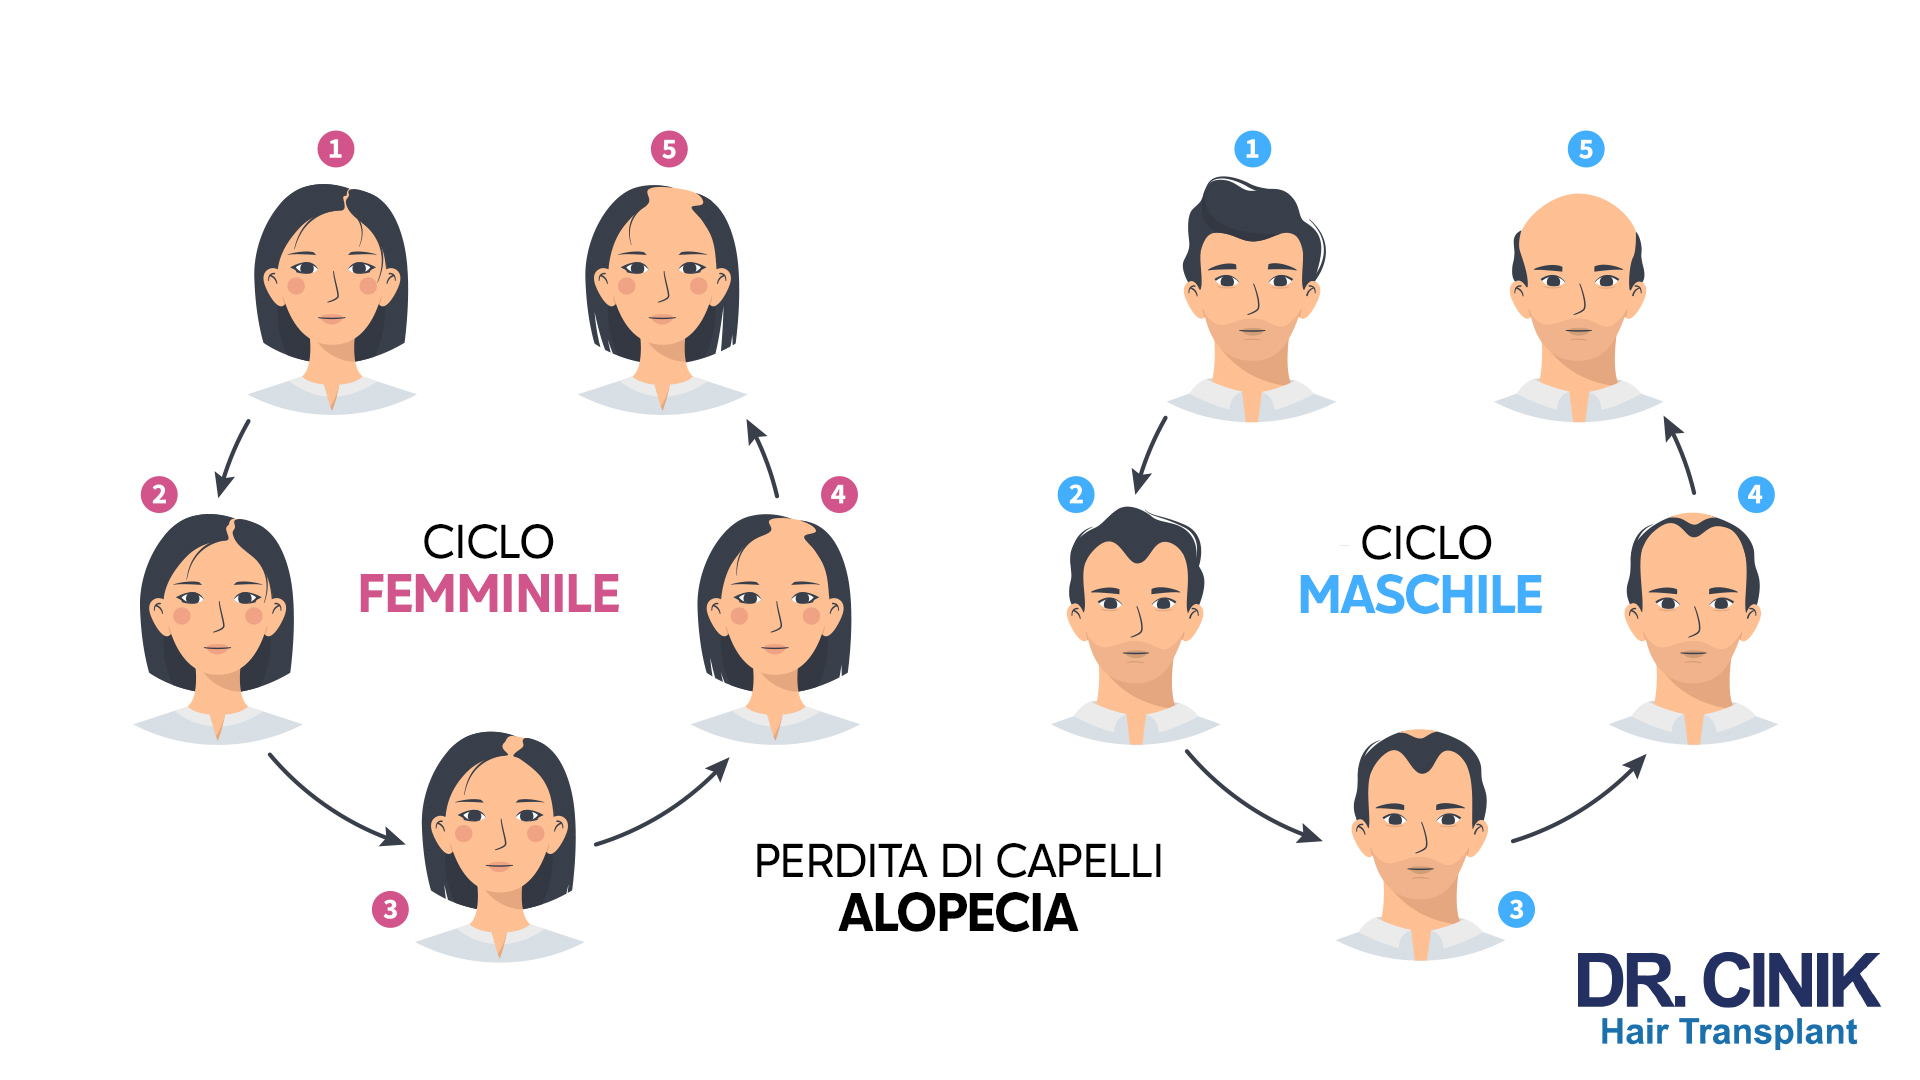 Un'infografica che illustra la progressione della perdita di capelli nei cicli femminili e maschili. A sinistra, sotto la dicitura "CICLO FEMMINILE", si mostra una donna con cinque fasi di diradamento progressivo al centro della testa. A destra, sotto "CICLO MASCHILE", è rappresentato un uomo con cinque fasi di arretramento della linea frontale dei capelli e diradamento nella zona superiore della testa. In basso al centro, il testo "PERDITA DI CAPELLI ALOPECIA" con il logo di "DR. CINIK Hair Transplant".